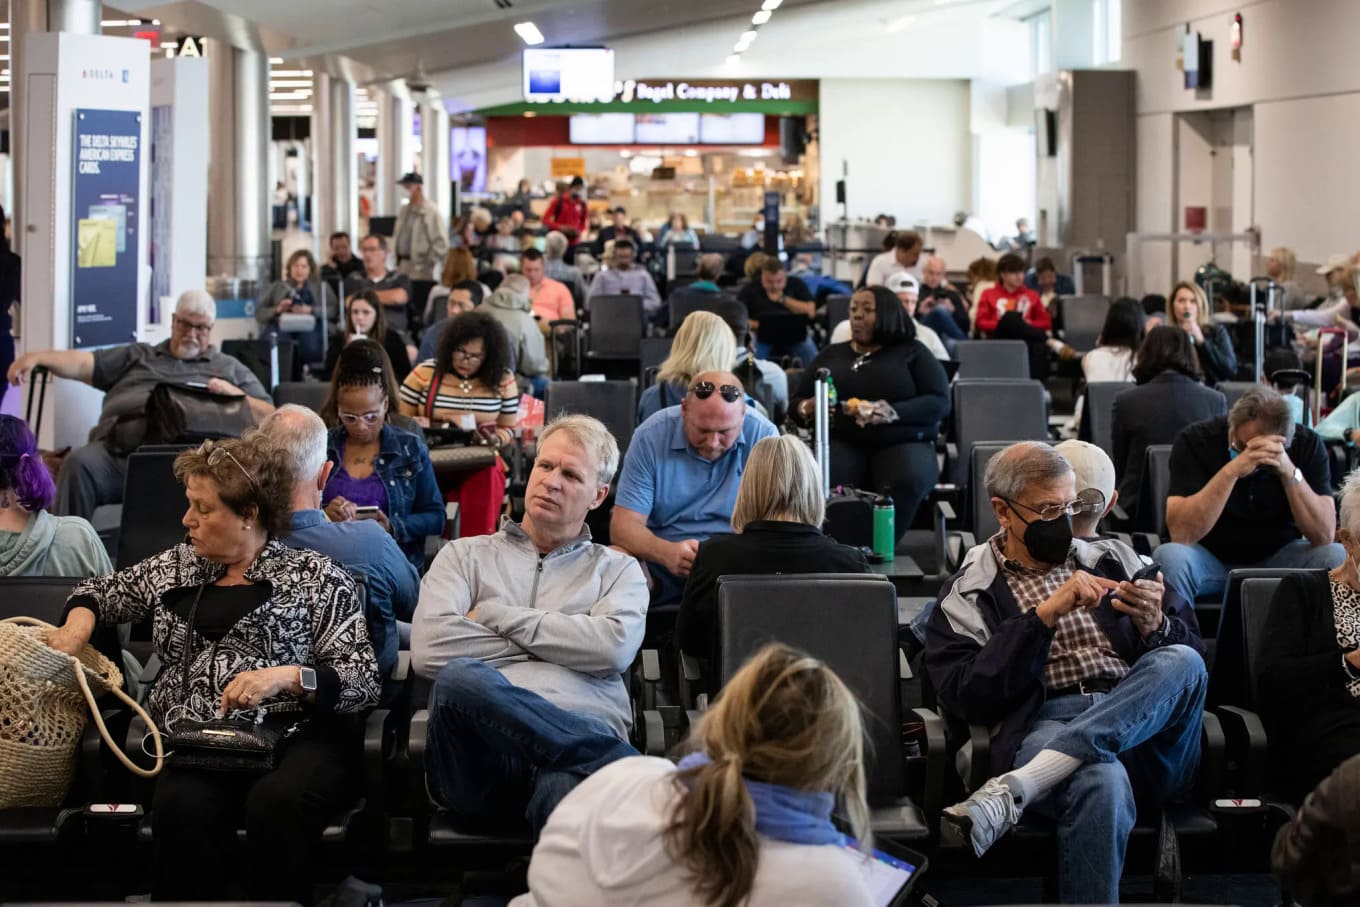 Sân bay Quốc tế Hartsfield-Jackson Atlanta hôm 19/4, một ngày sau khi tòa án liên bang tại Florida bãi bỏ yêu cầu đeo khẩu trang với việc đi lại bằng đường hàng không. Ảnh: Dustin Chambers/NY Times